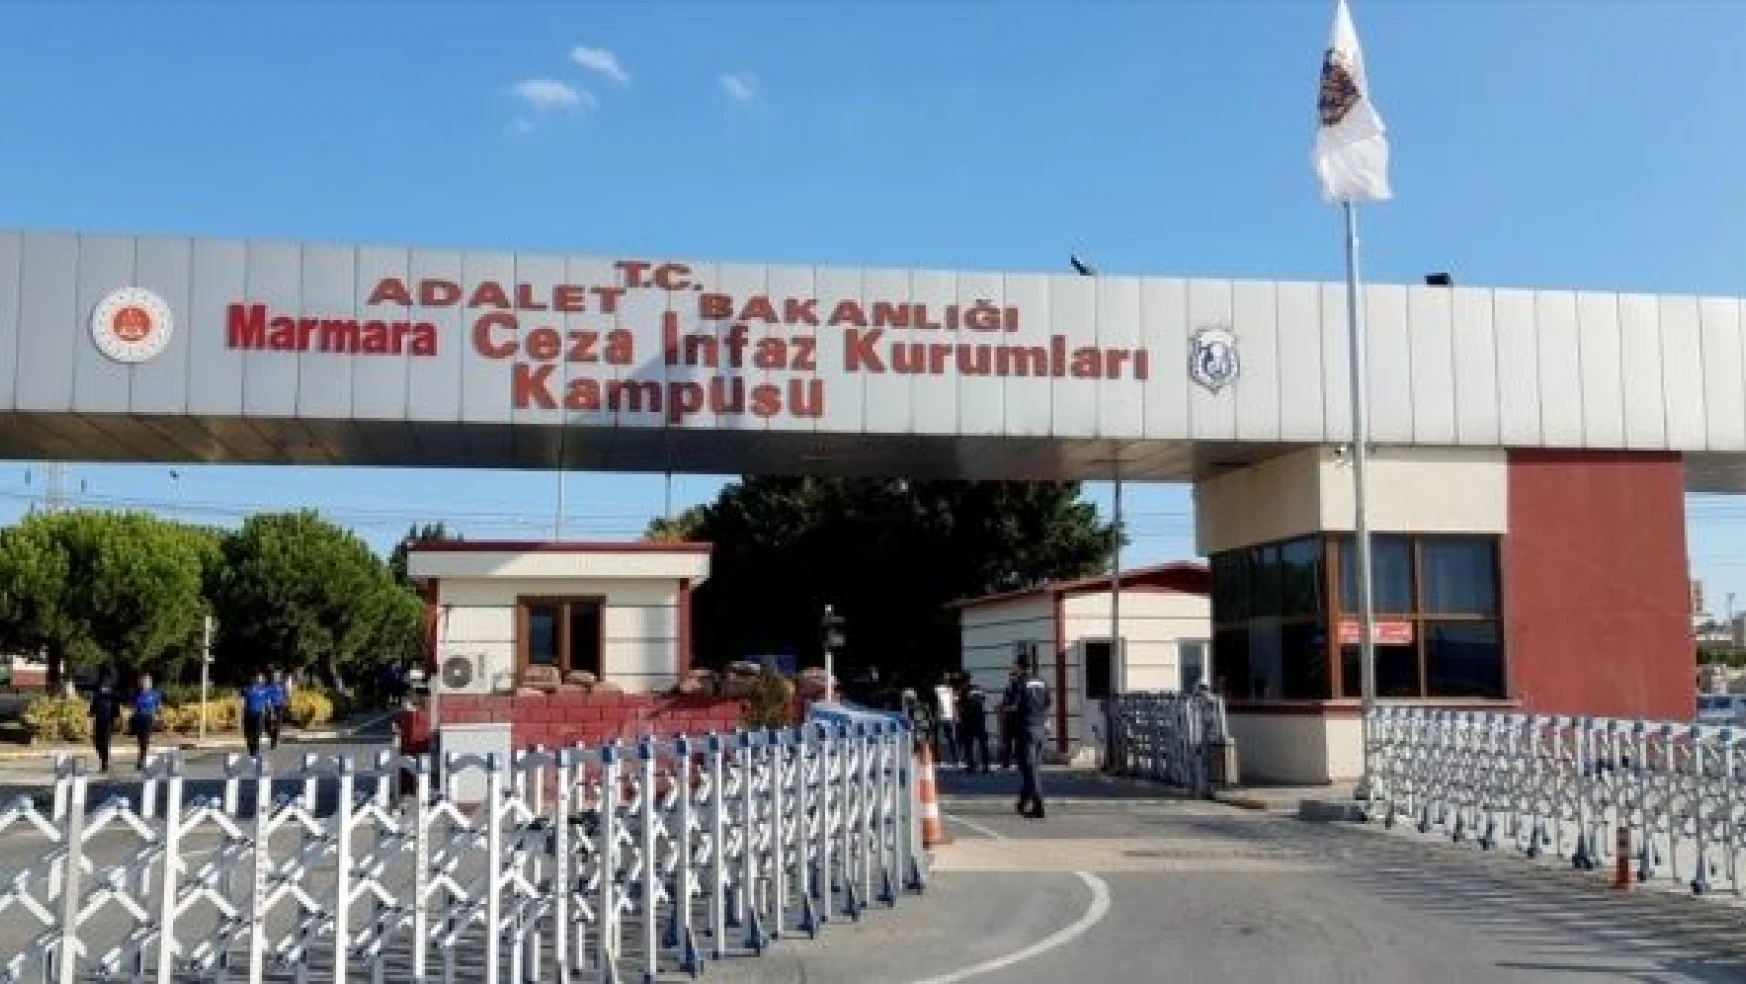 Silivri'deki cezaevinin tabelası 'Marmara Cezaevi' olarak değiştirildi